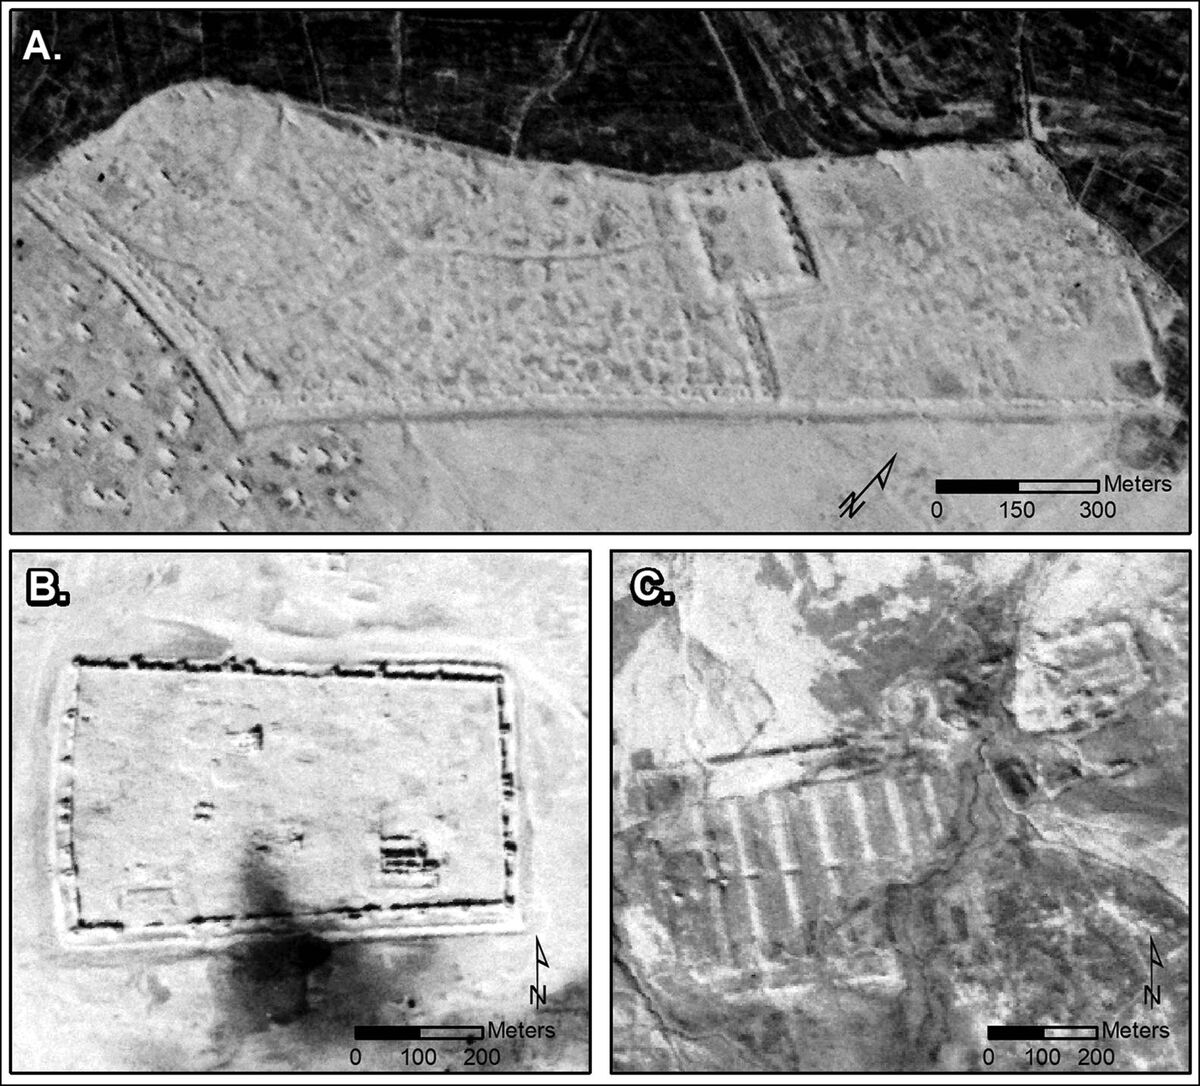 Άγνωστα ρωμαϊκά οχυρά αποκάλυψαν κατασκοπευτικές φωτογραφίες του Ψυχρού Πολέμου